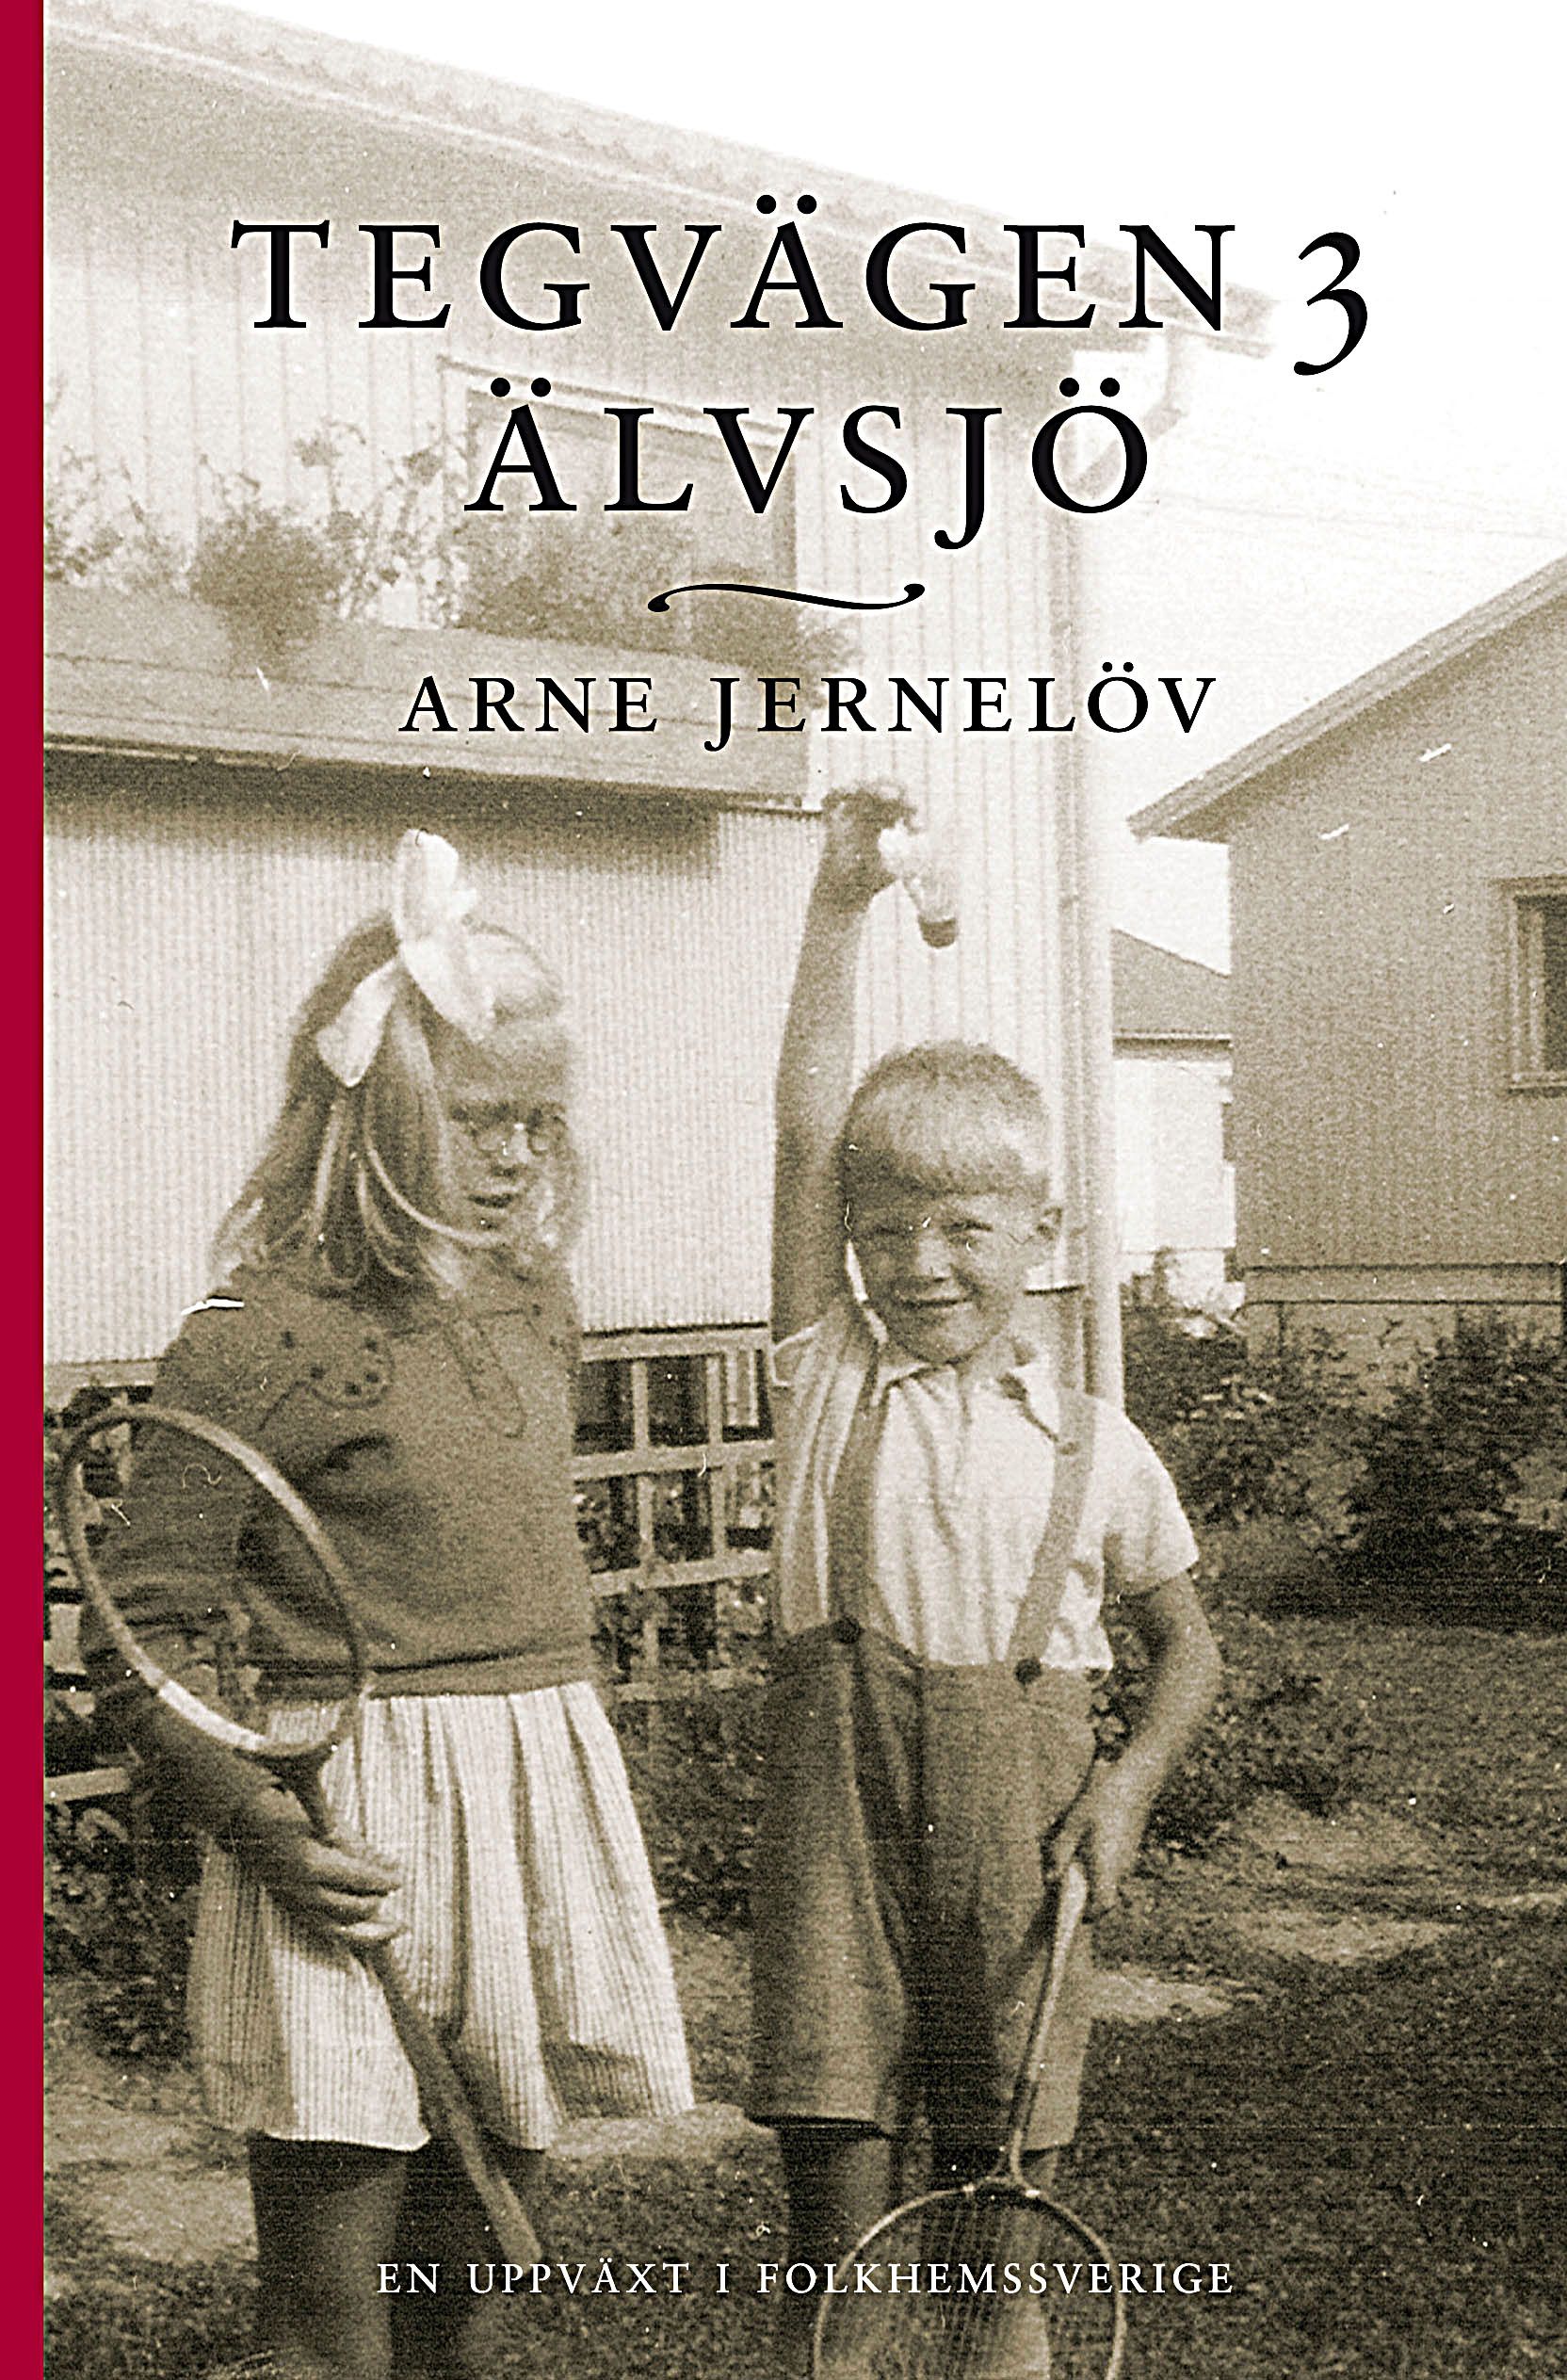 Tegvägen 3, Älvsjö, e-bok av Arne Jernelöv